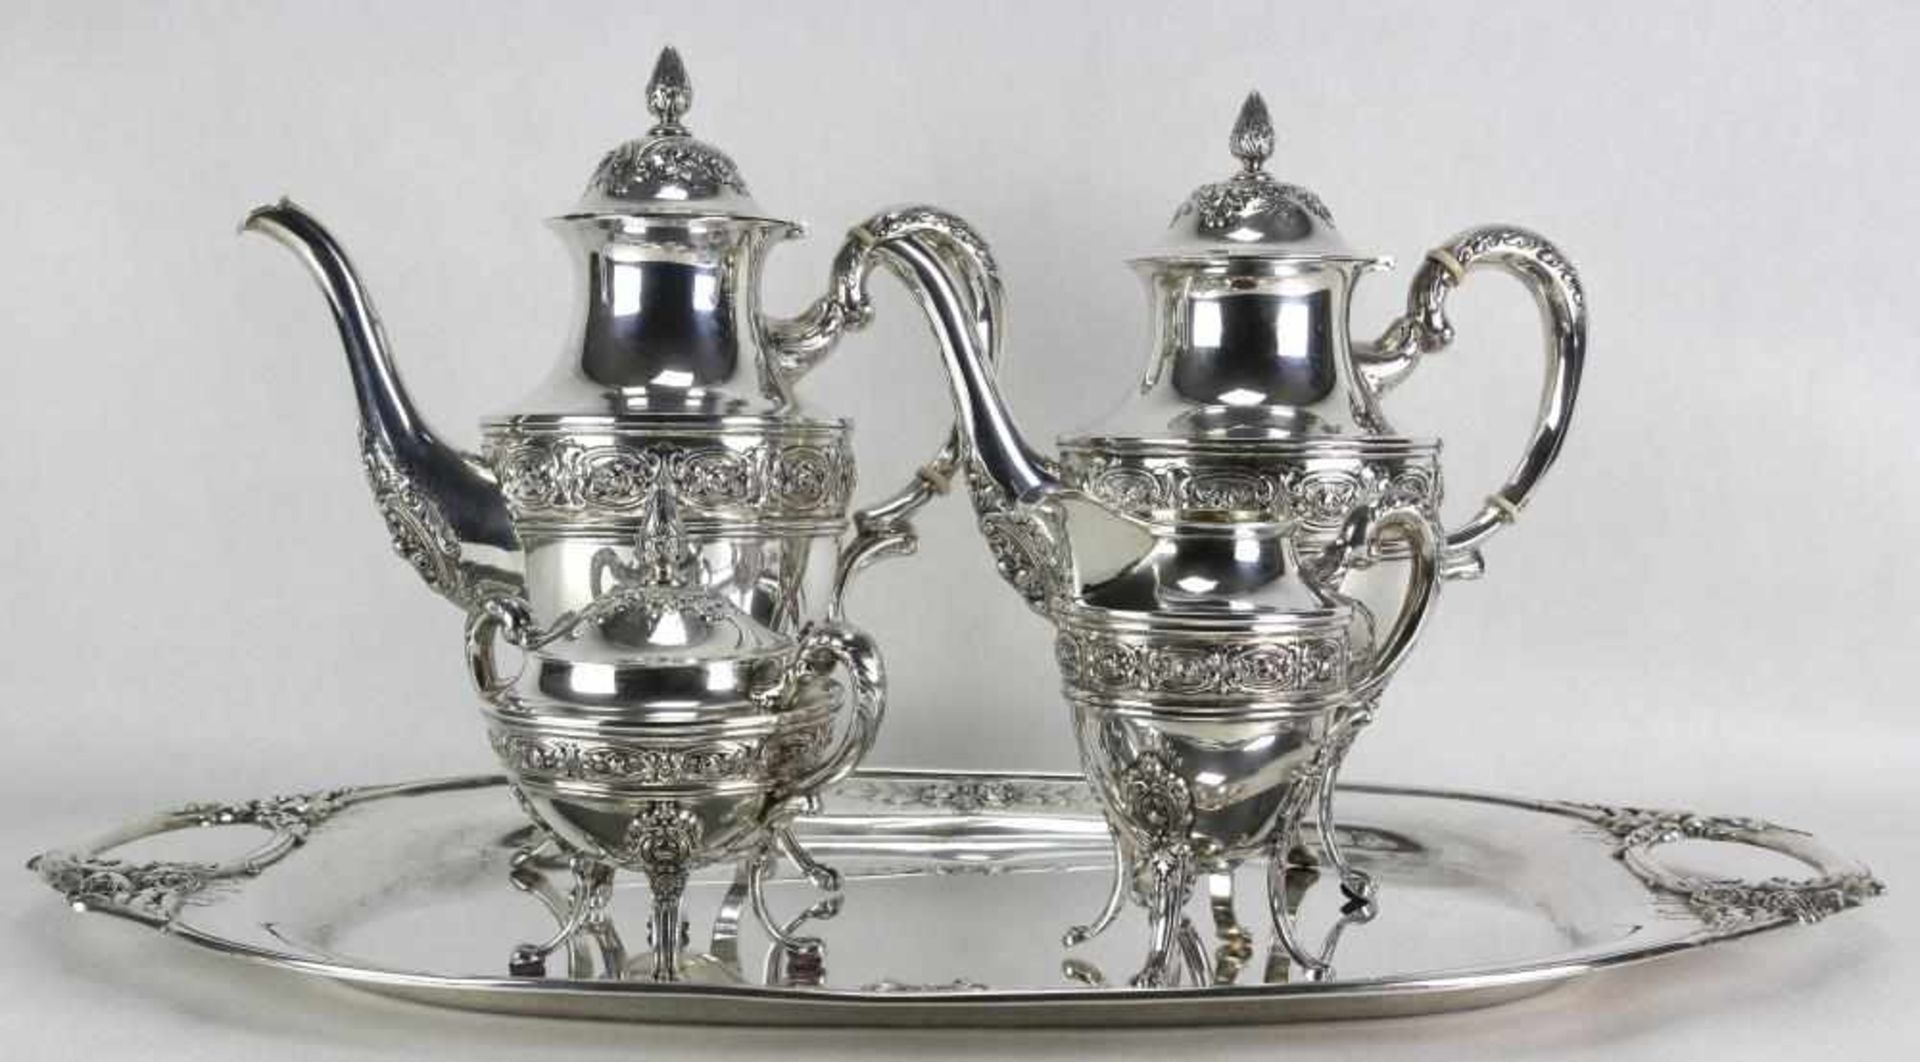 Großer Kaffeekern England um 1900. Silber (925) Sterling punziert und geprüft. Großes Tablett und